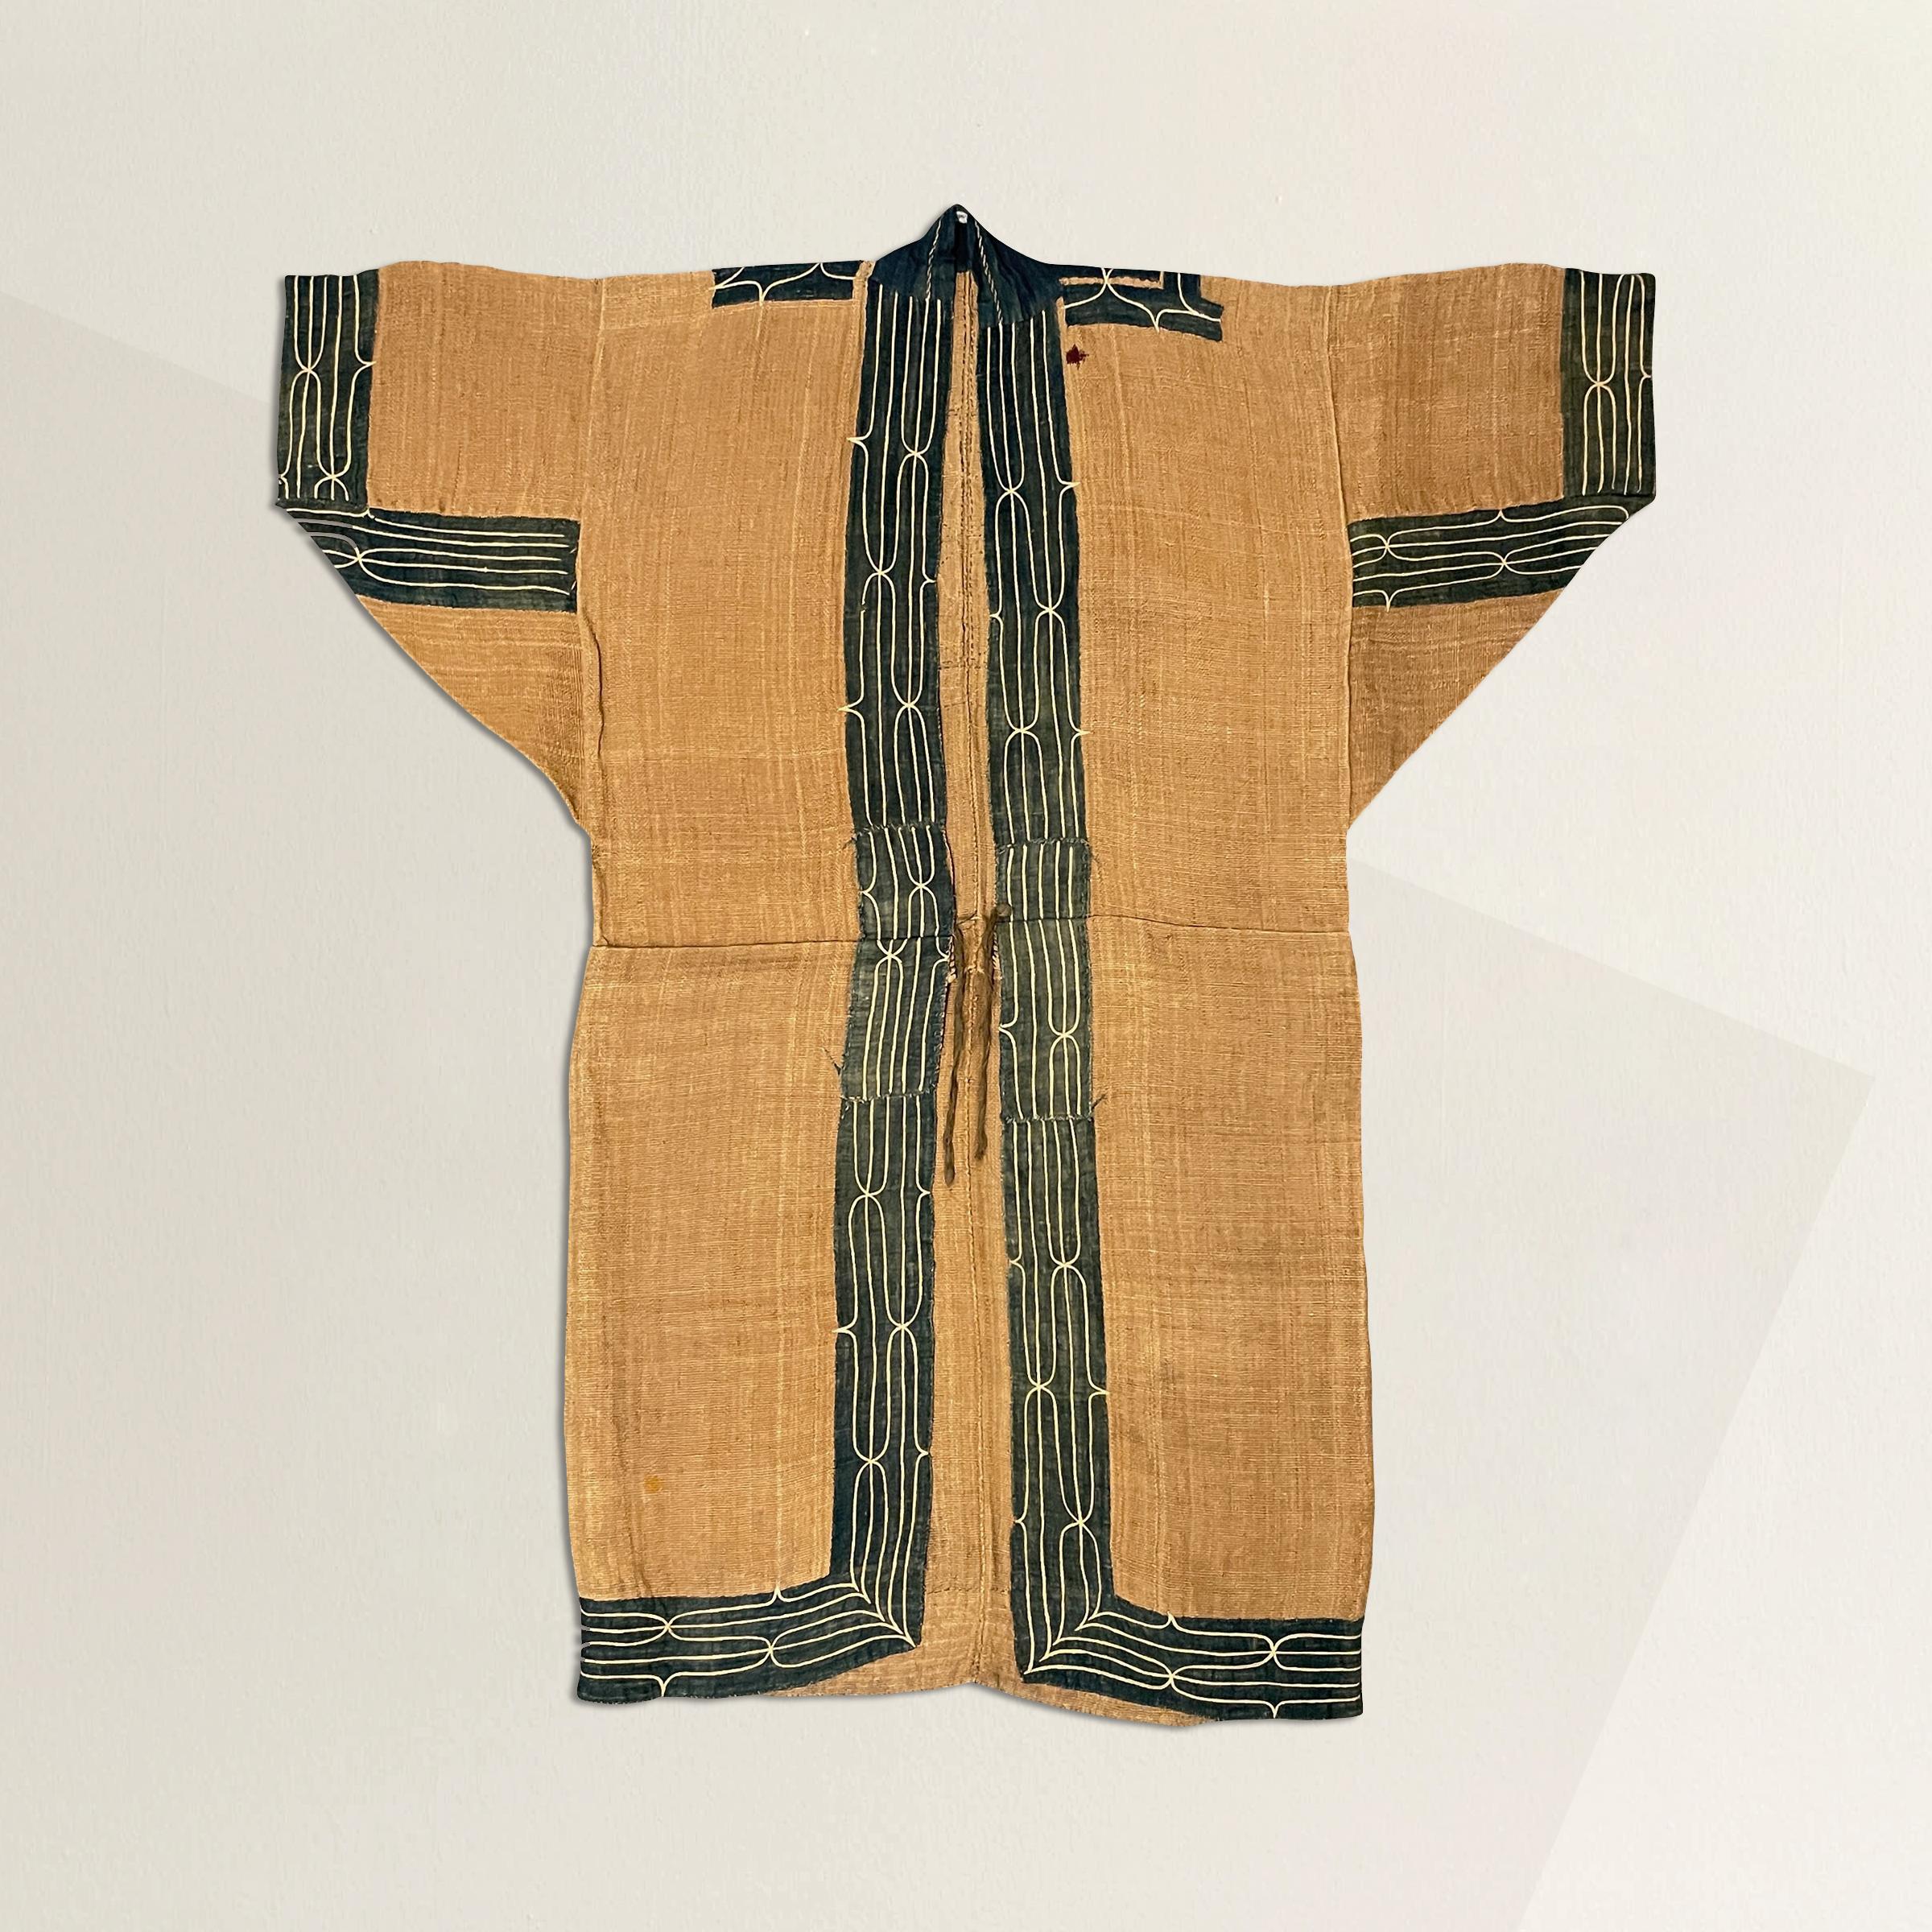 Cette robe Ainu Attus (fibre d'écorce) du XIXe siècle est un témoignage remarquable de l'héritage culturel et de la résilience du peuple Ainu. Fabriqué avec un soin méticuleux, il constitue une pièce exceptionnelle et extrêmement rare de l'artisanat